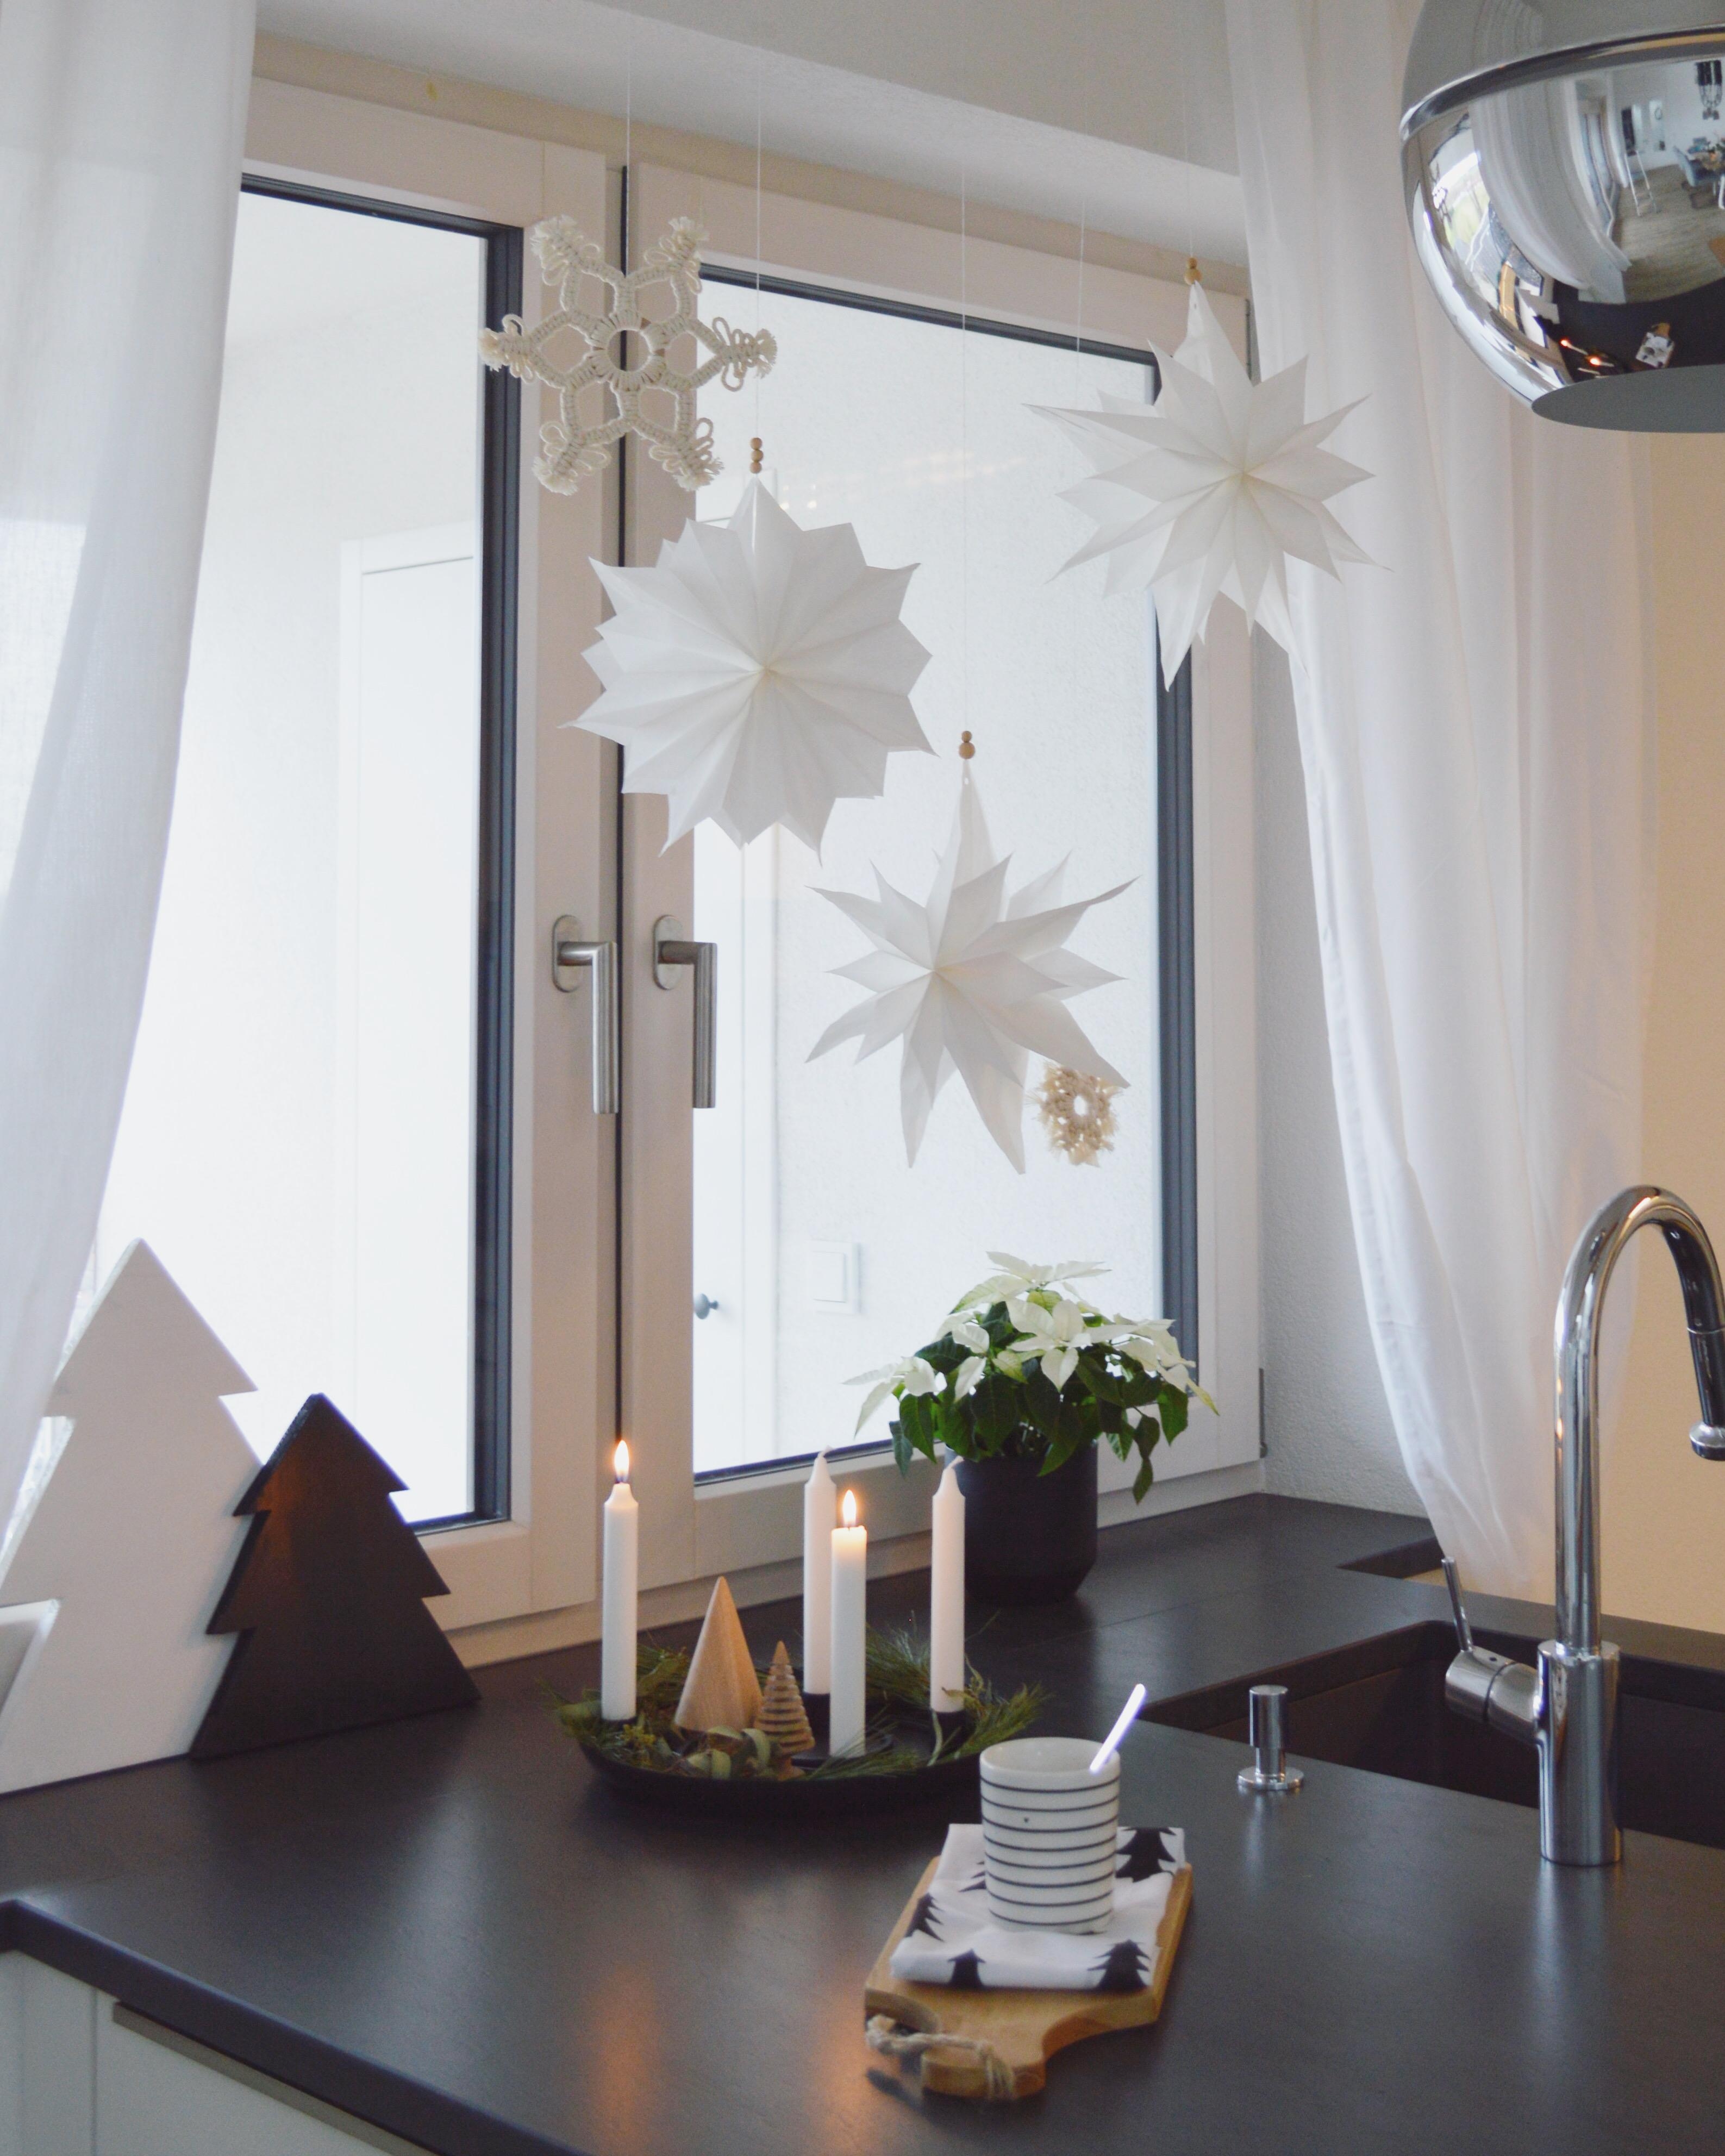 Schönen zweiten Advent 🕯🕯
#weihnachtskranz #weihnachtsstern #kitchendetails #meinfroehlicheszuhause